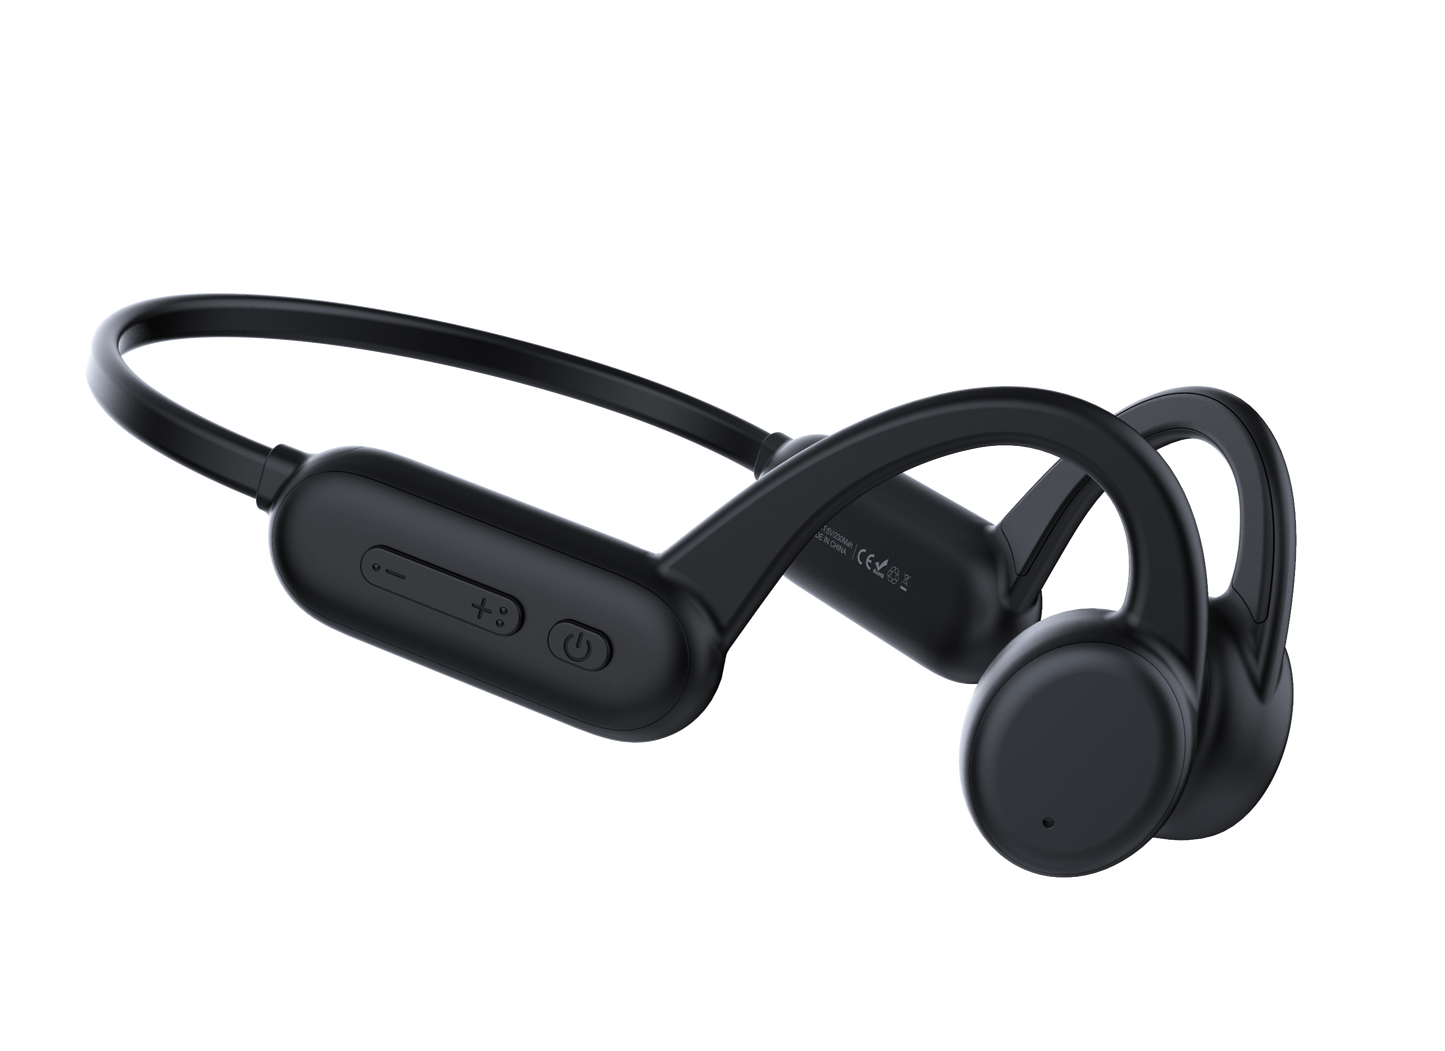 OAKTREE WaterProof Bone Conduction Headphone - Open-Ear Bluetooth 5.0, 8GB Internal MP3 Player